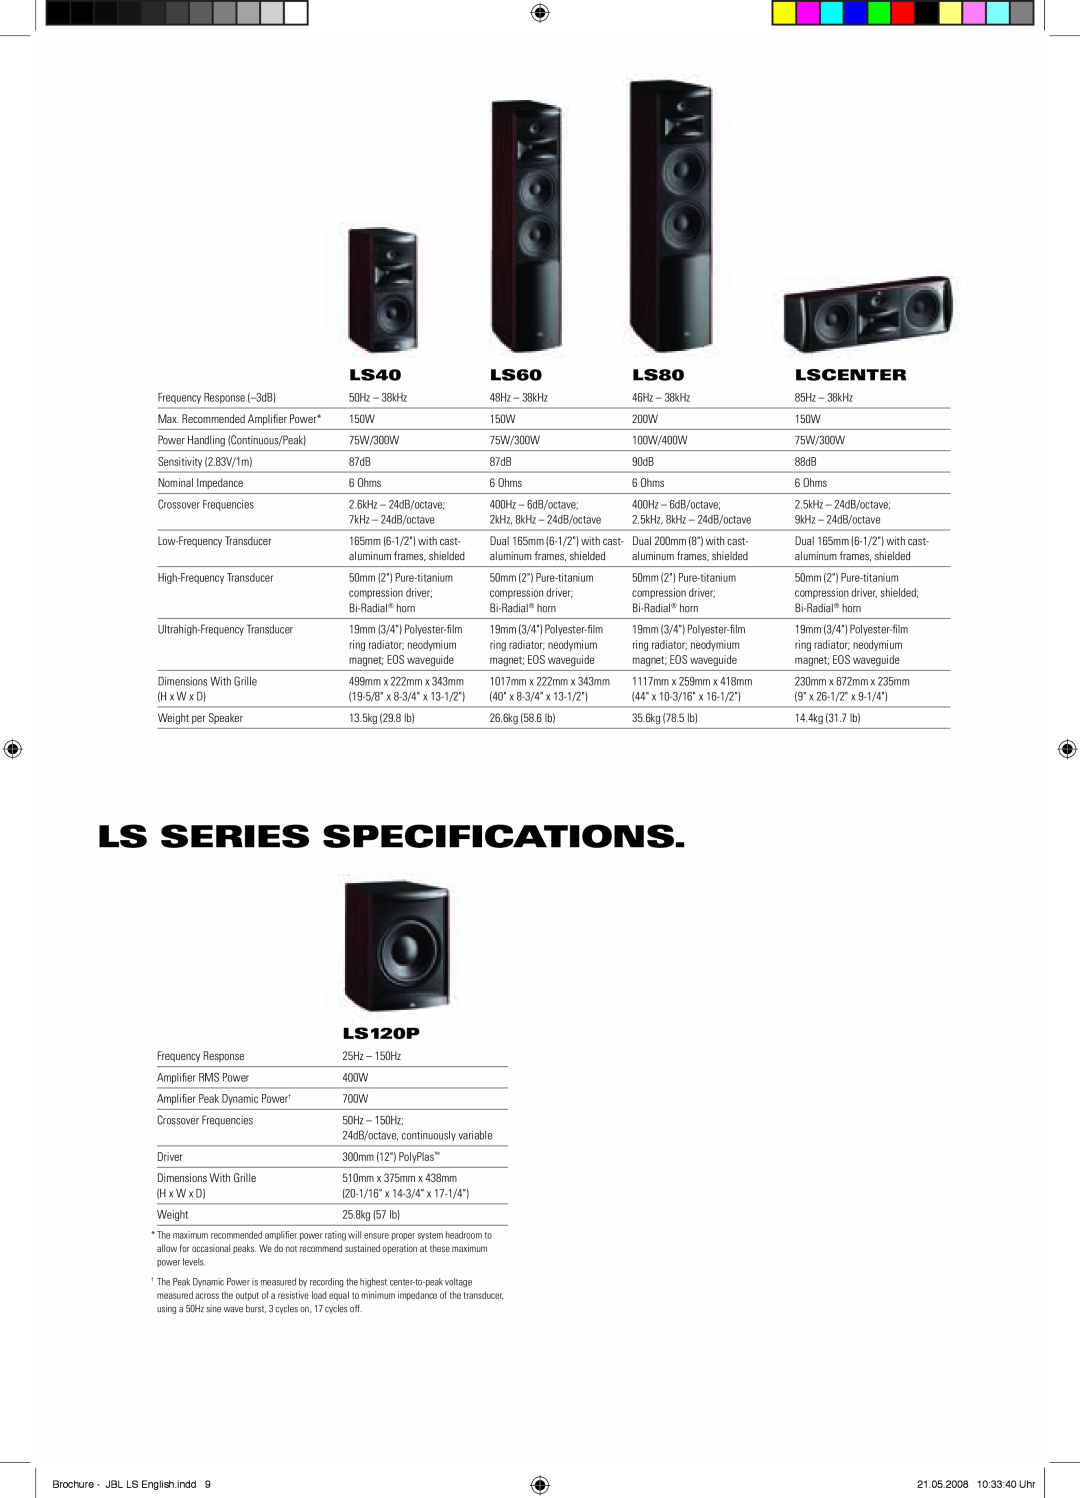 JBL LS Series brochure Ls Series Specifications, LS40, LS60, LS80, Lscenter, LS120P 